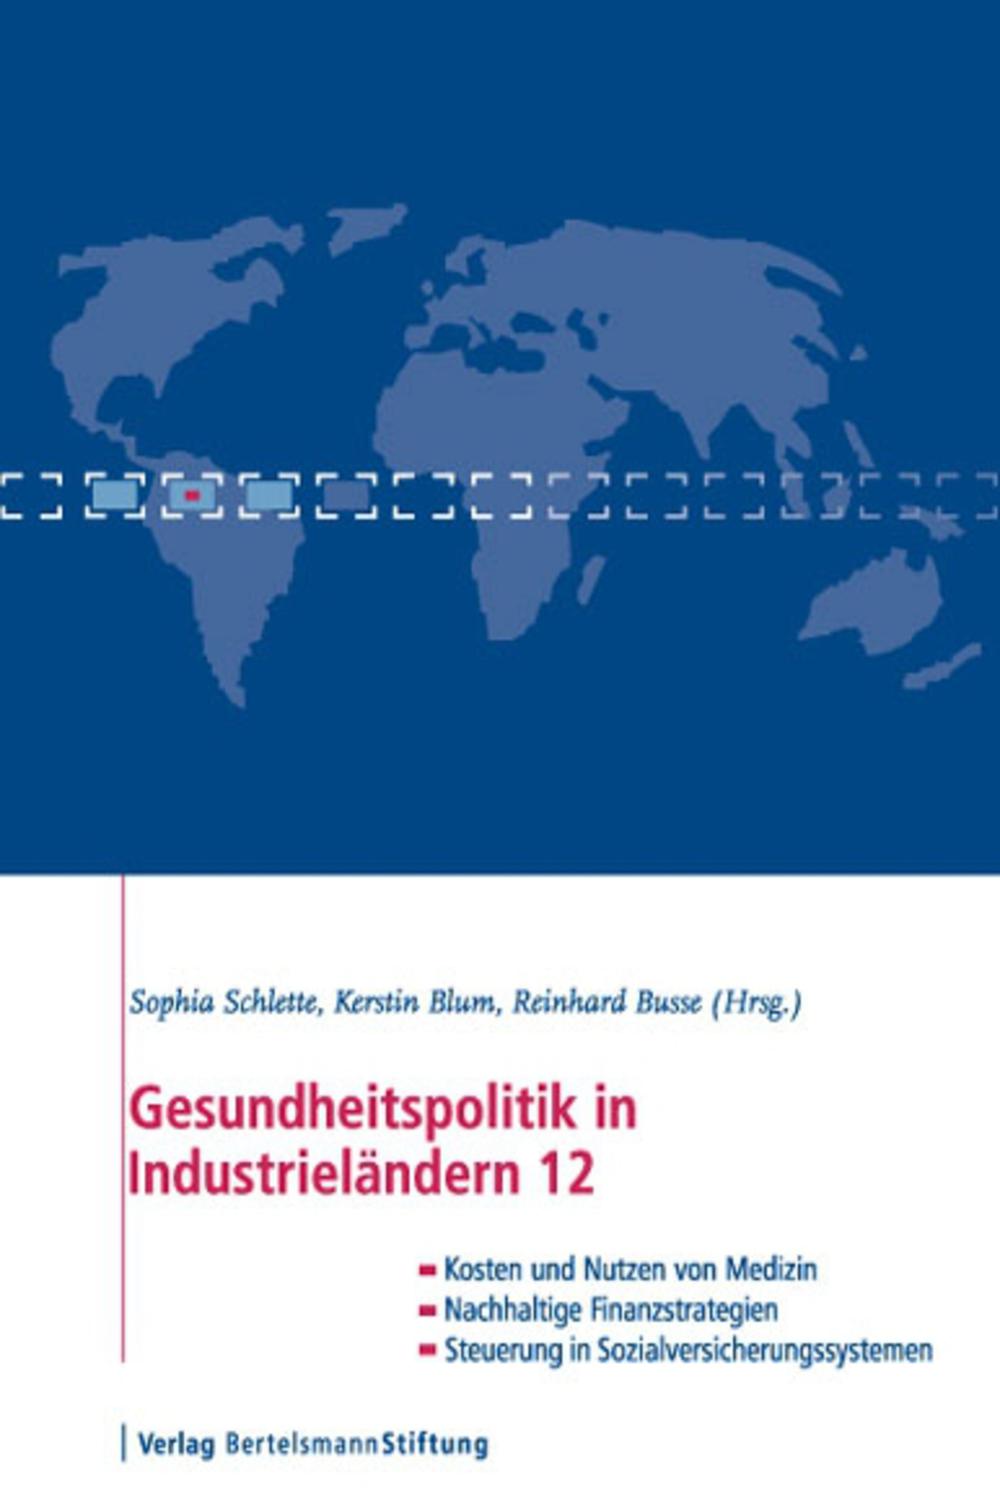 Gesundheitspolitik in Industrieländern 12 - Sophia Schlette, Kerstin Blum, Reinhard Busse